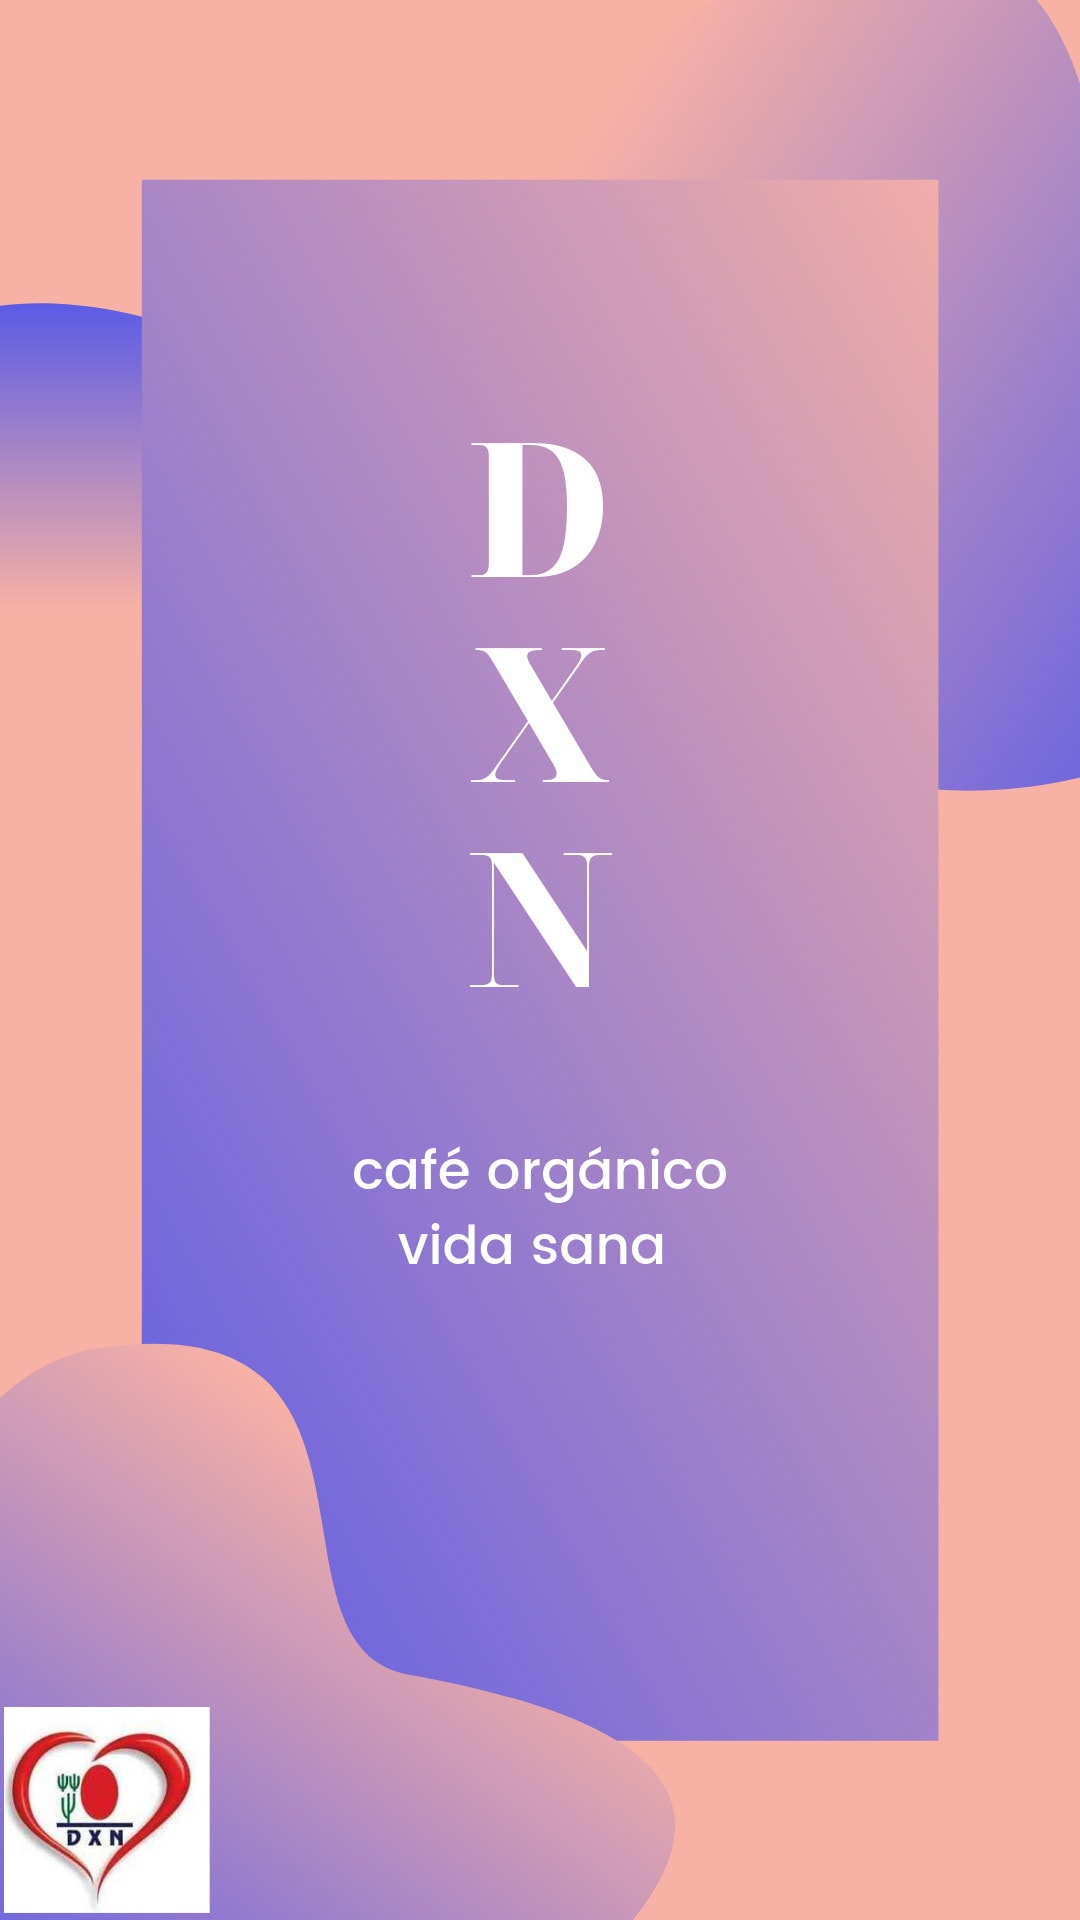 DXN: Cafe Orgánico Vida Sana